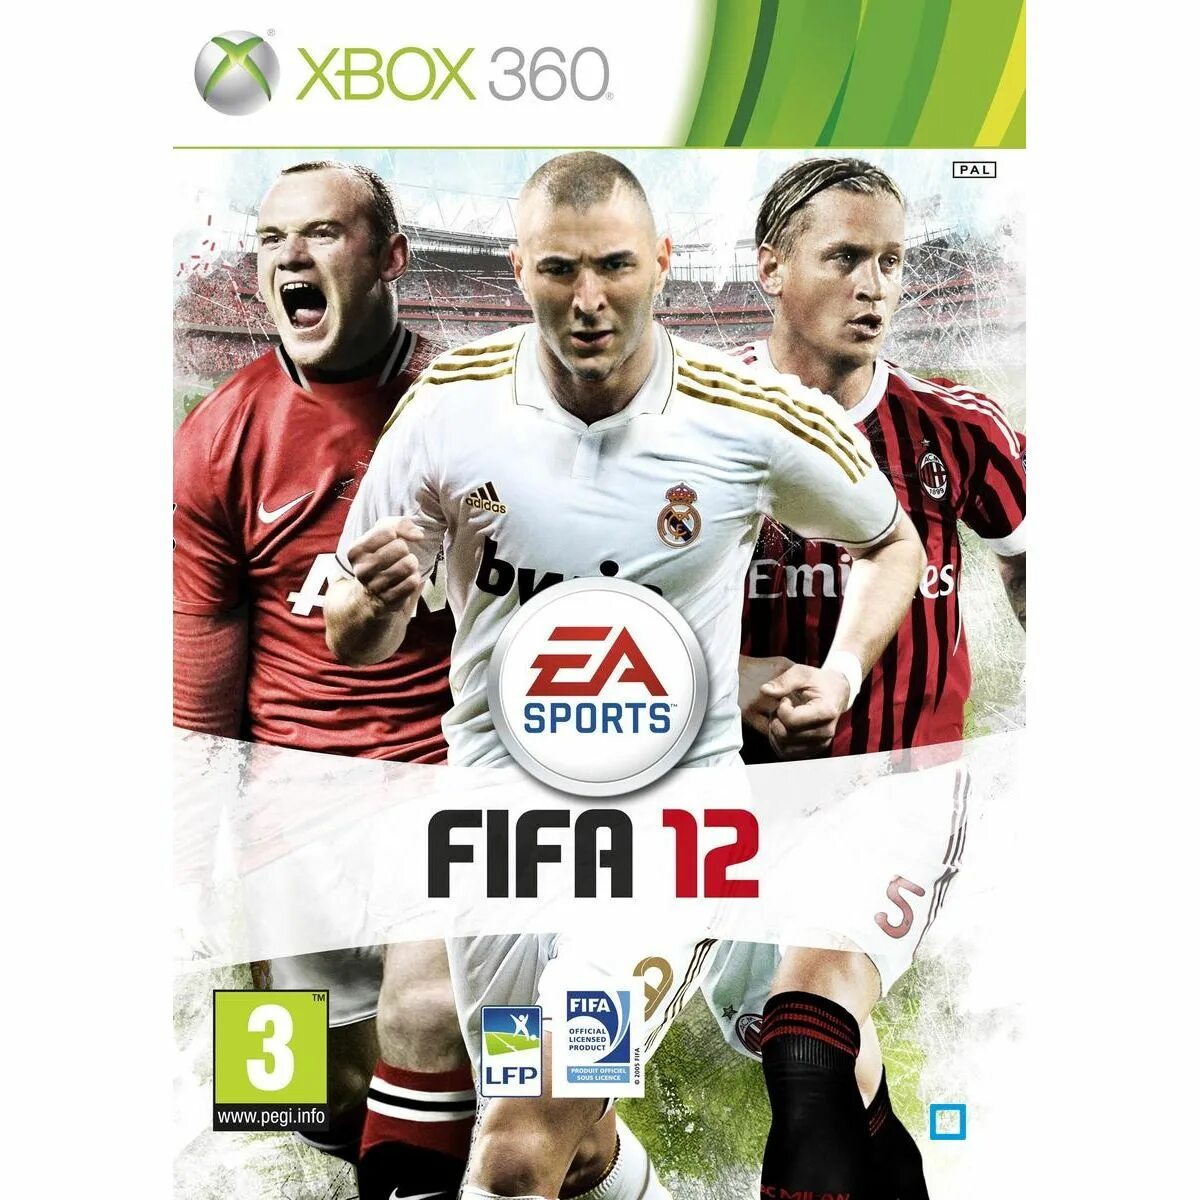 ФИФА 12 Xbox 360. Обложка диска ФИФА 12 Xbox 360. FIFA 11 Xbox 360 обложка. FIFA 12 диск.